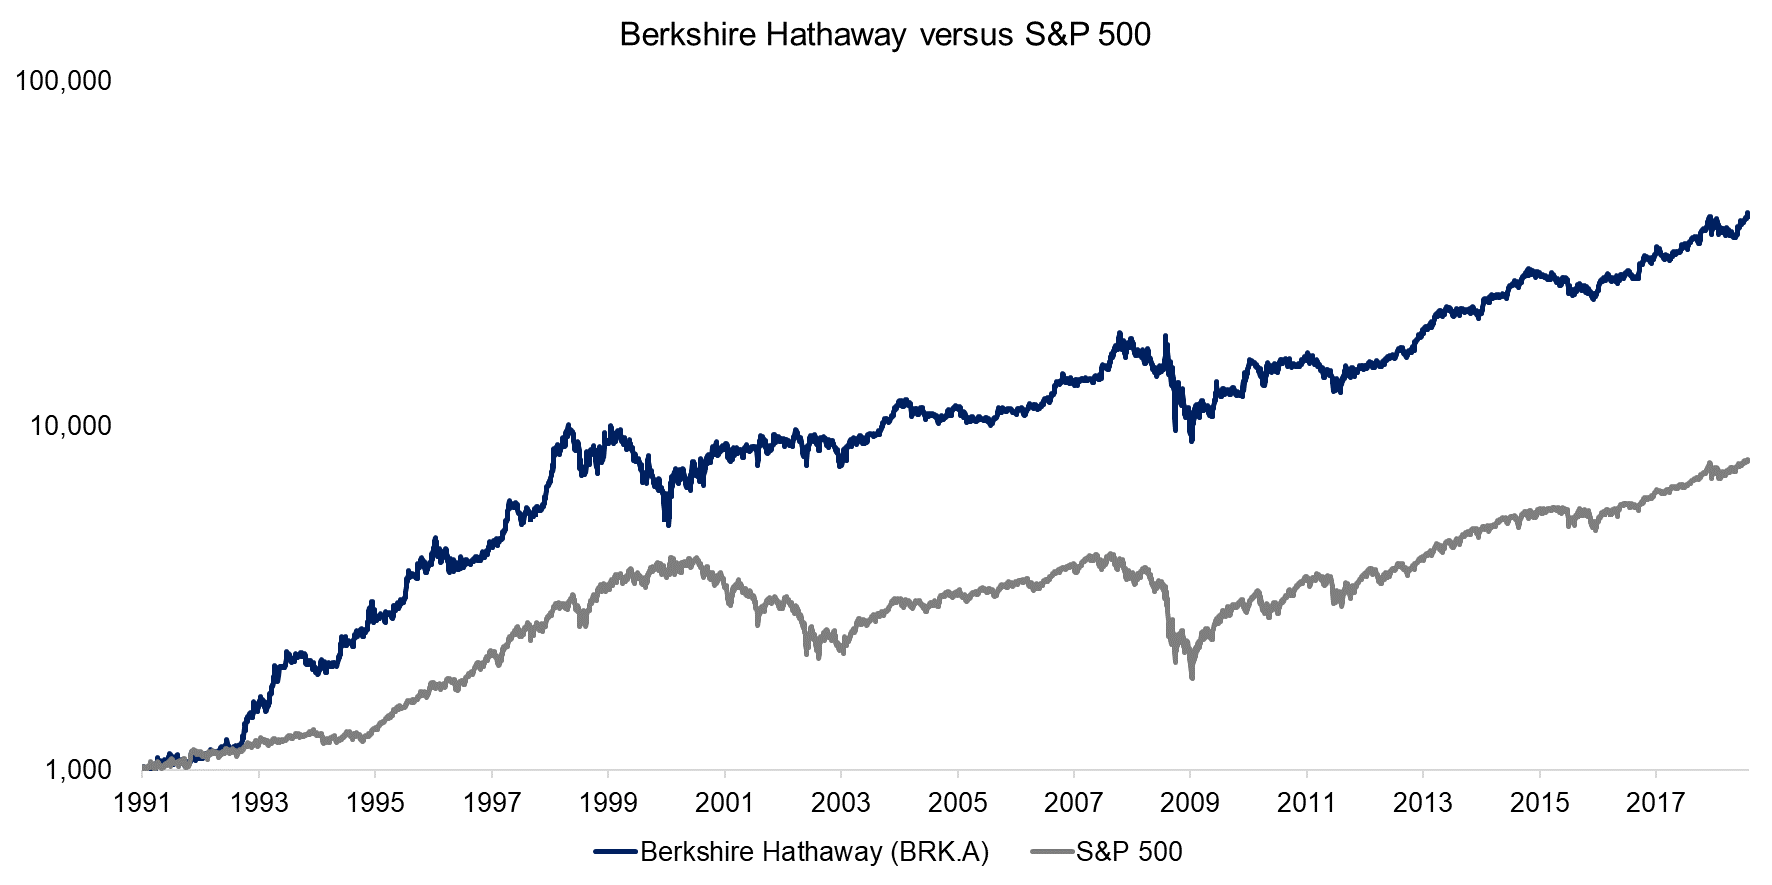 Berkshire Hathaway versus S&P 500